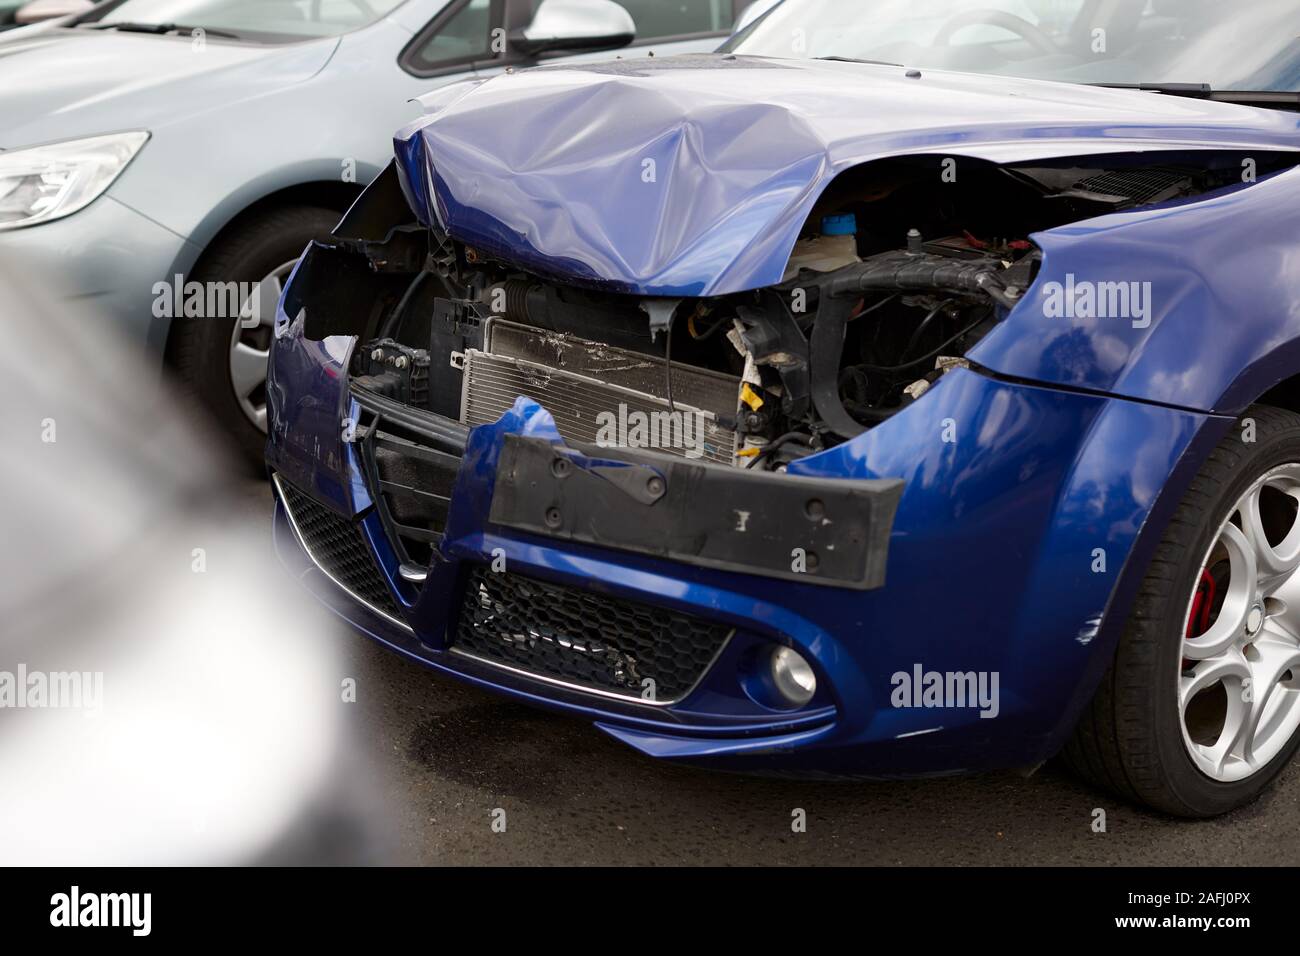 Dettaglio della vettura danneggiata nell'incidente automobilistico parcheggiate nel garage negozio di riparazione Foto Stock